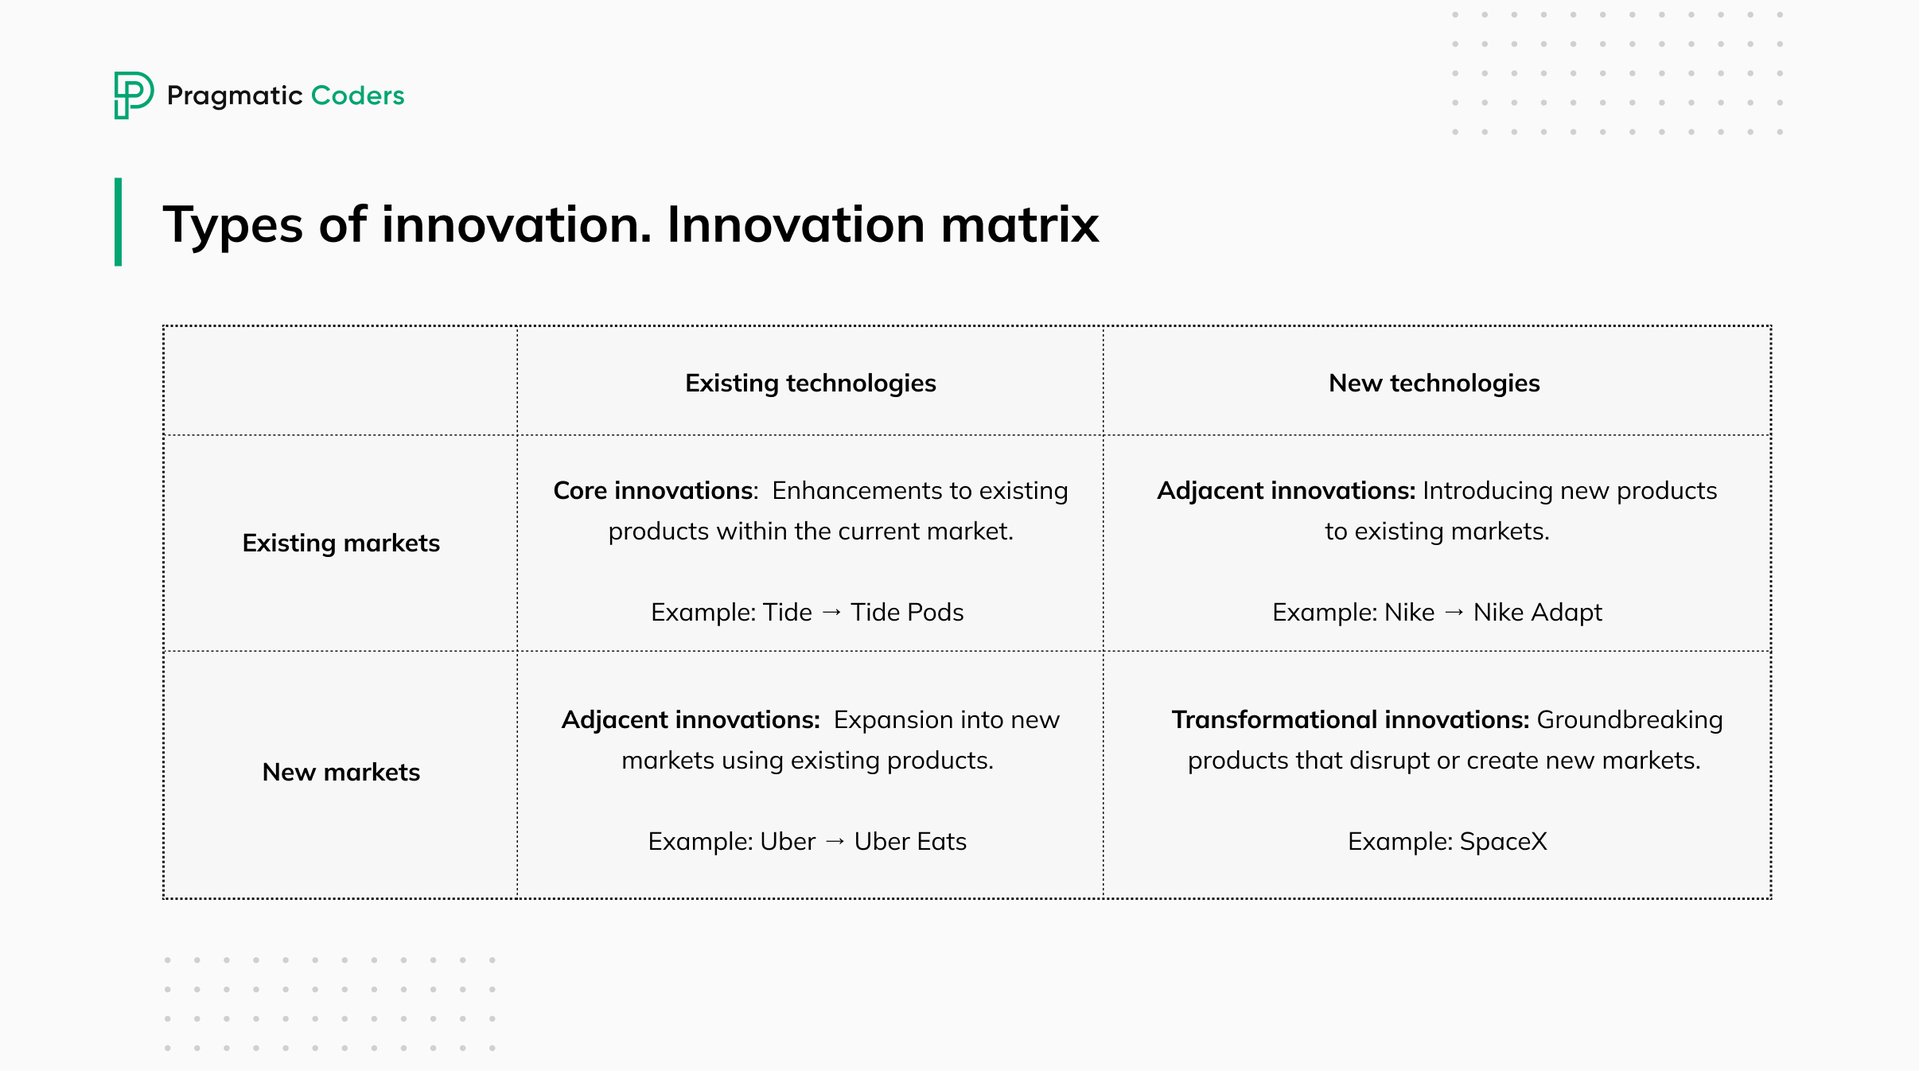 Types of innovation. Innovation matrix examples